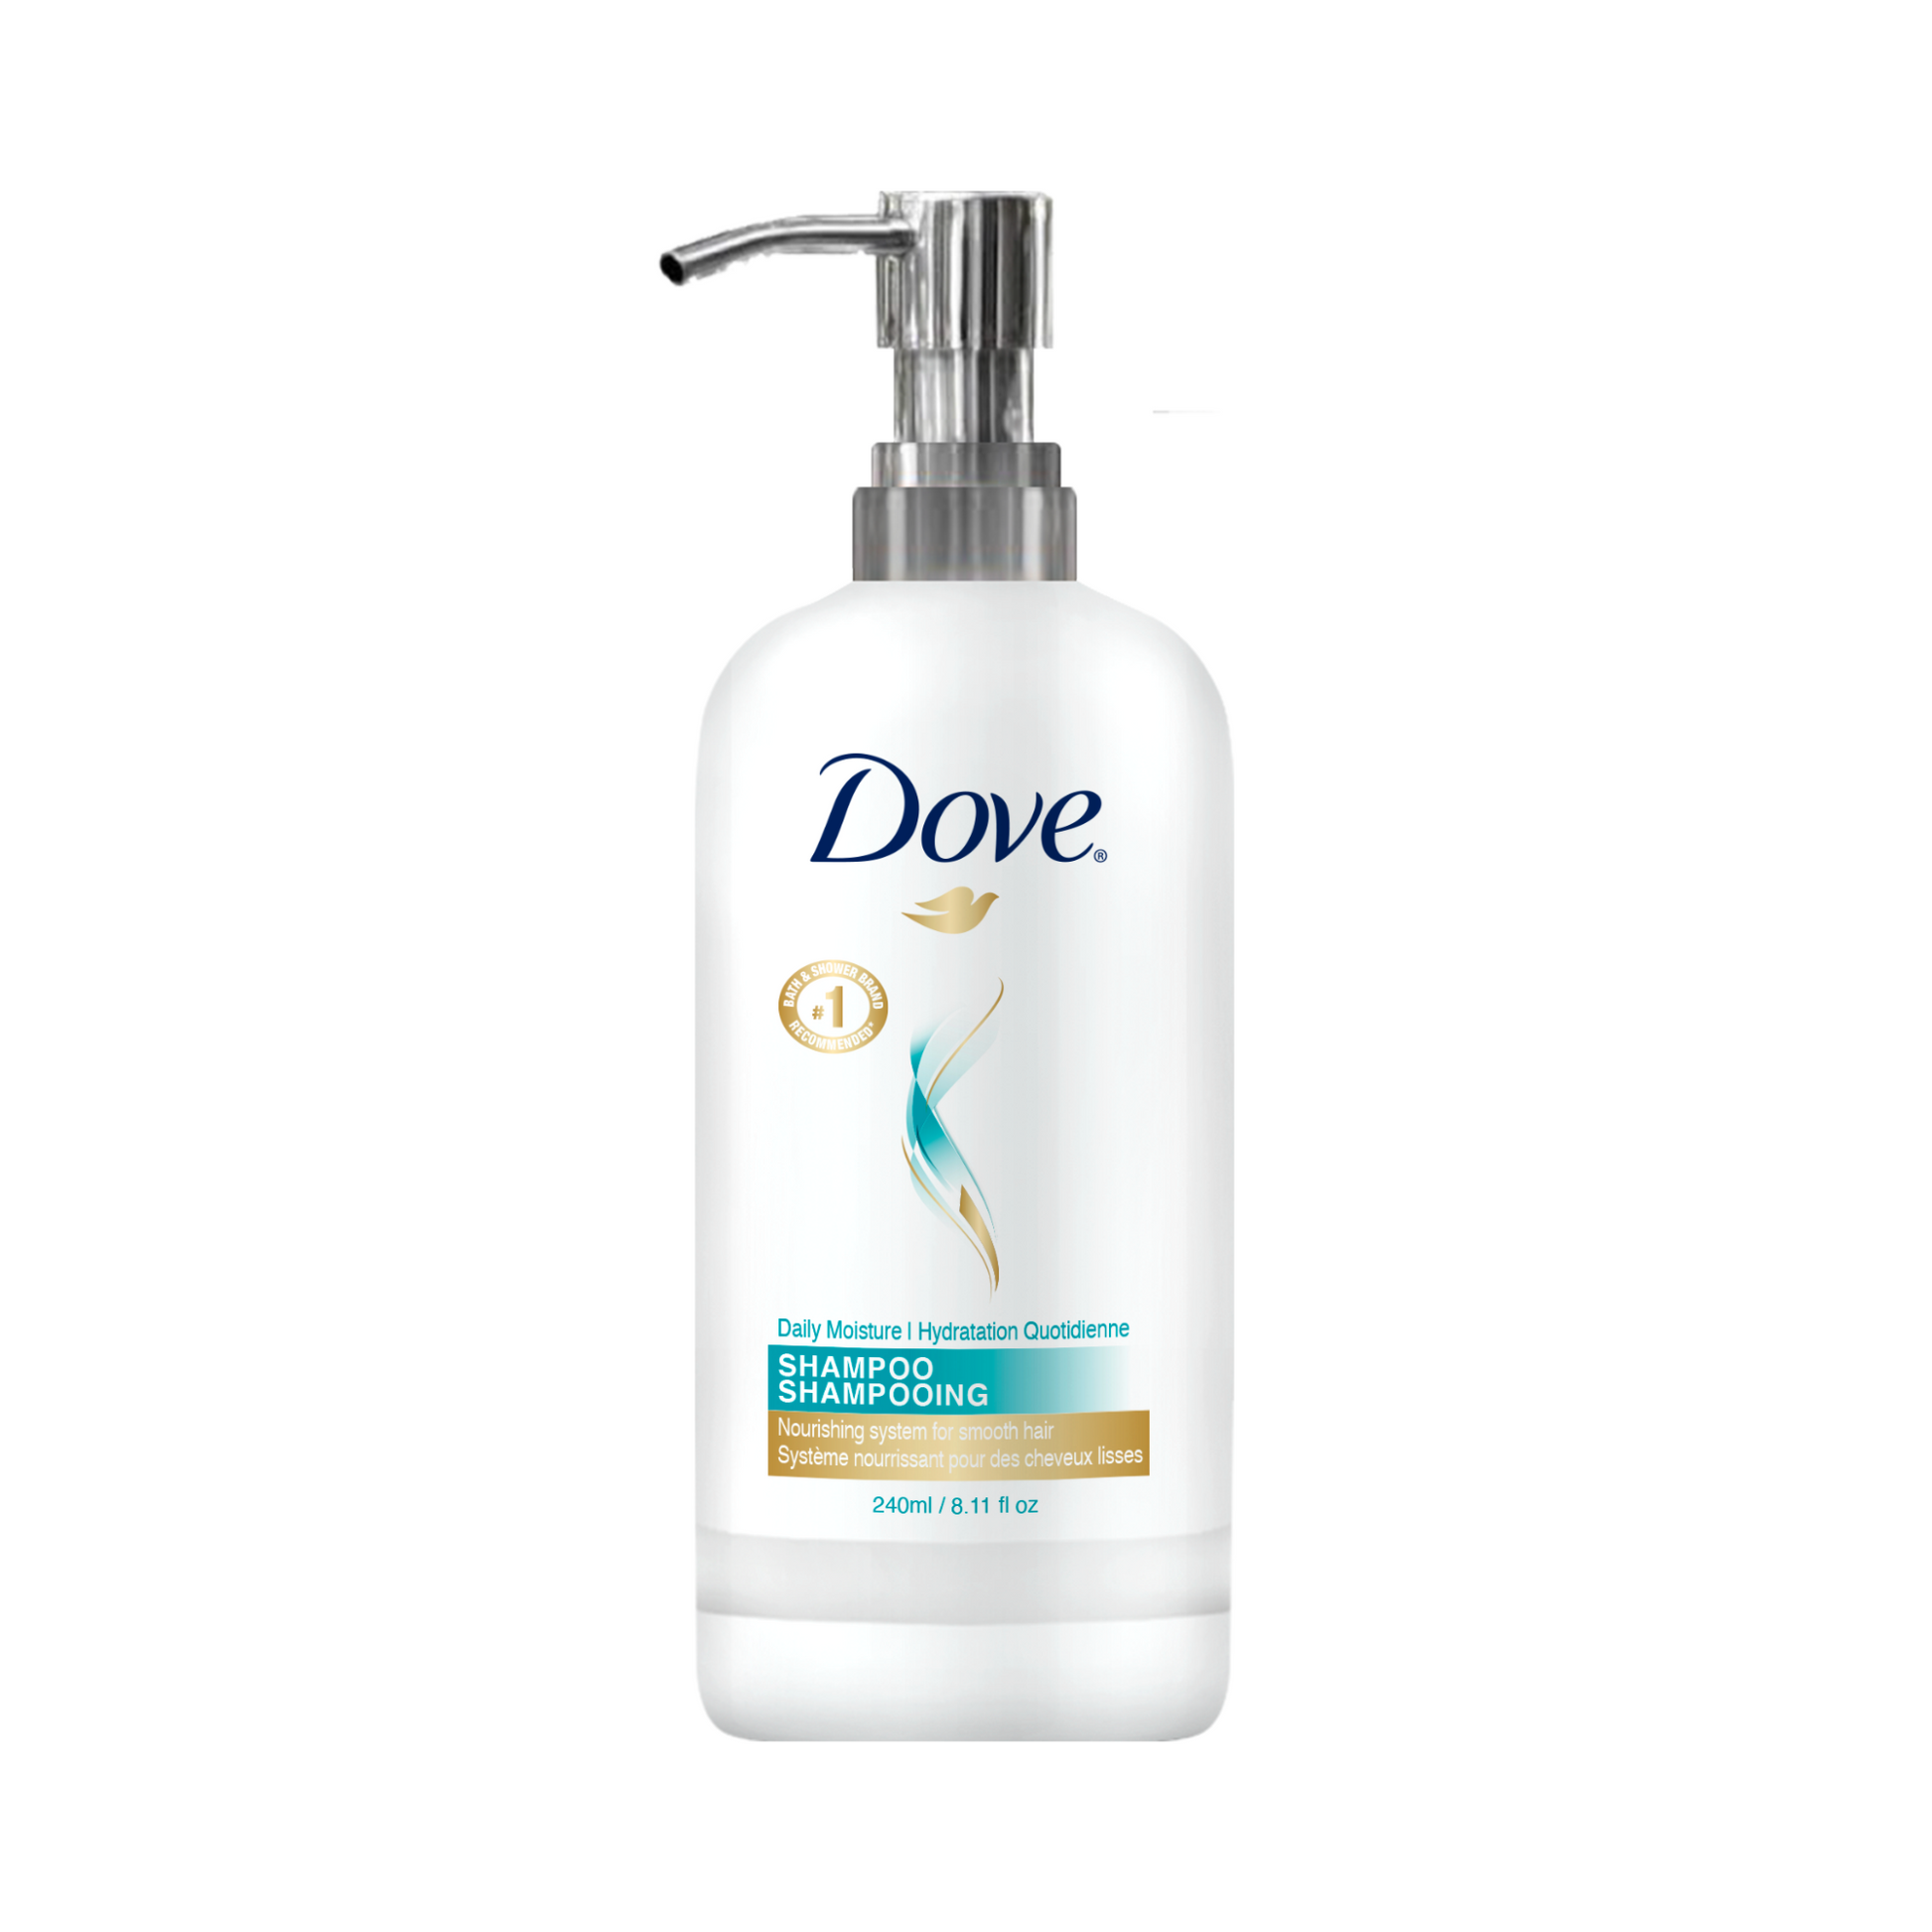 Dove Daily Moisture Shampoo bottle - 240ml